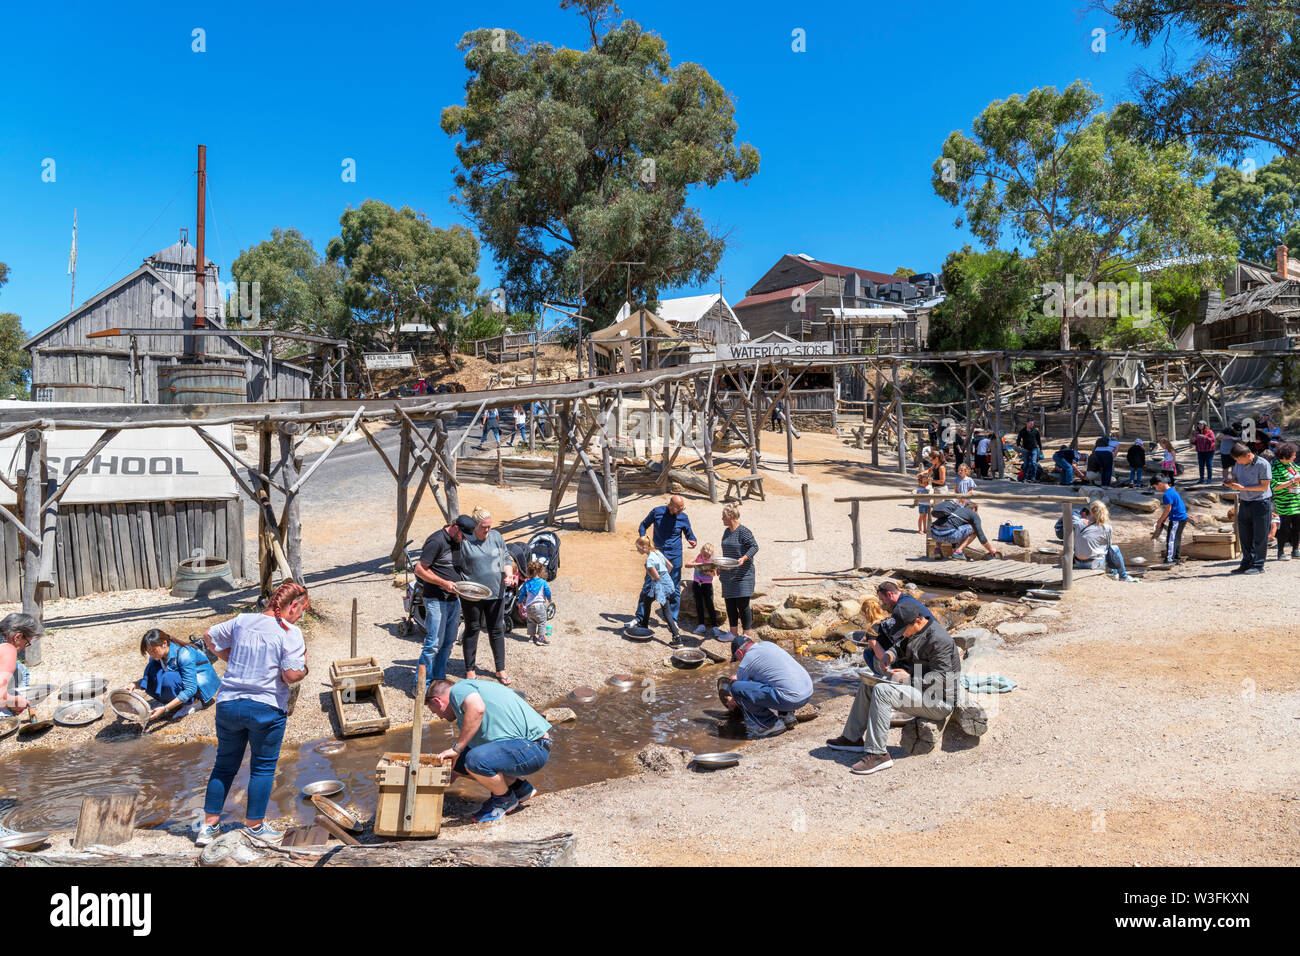 Les visiteurs l'occasion de chercher de l'or à Sovereign Hill, un musée en plein air dans la vieille ville minière de Ballarat, Victoria, Australie Banque D'Images